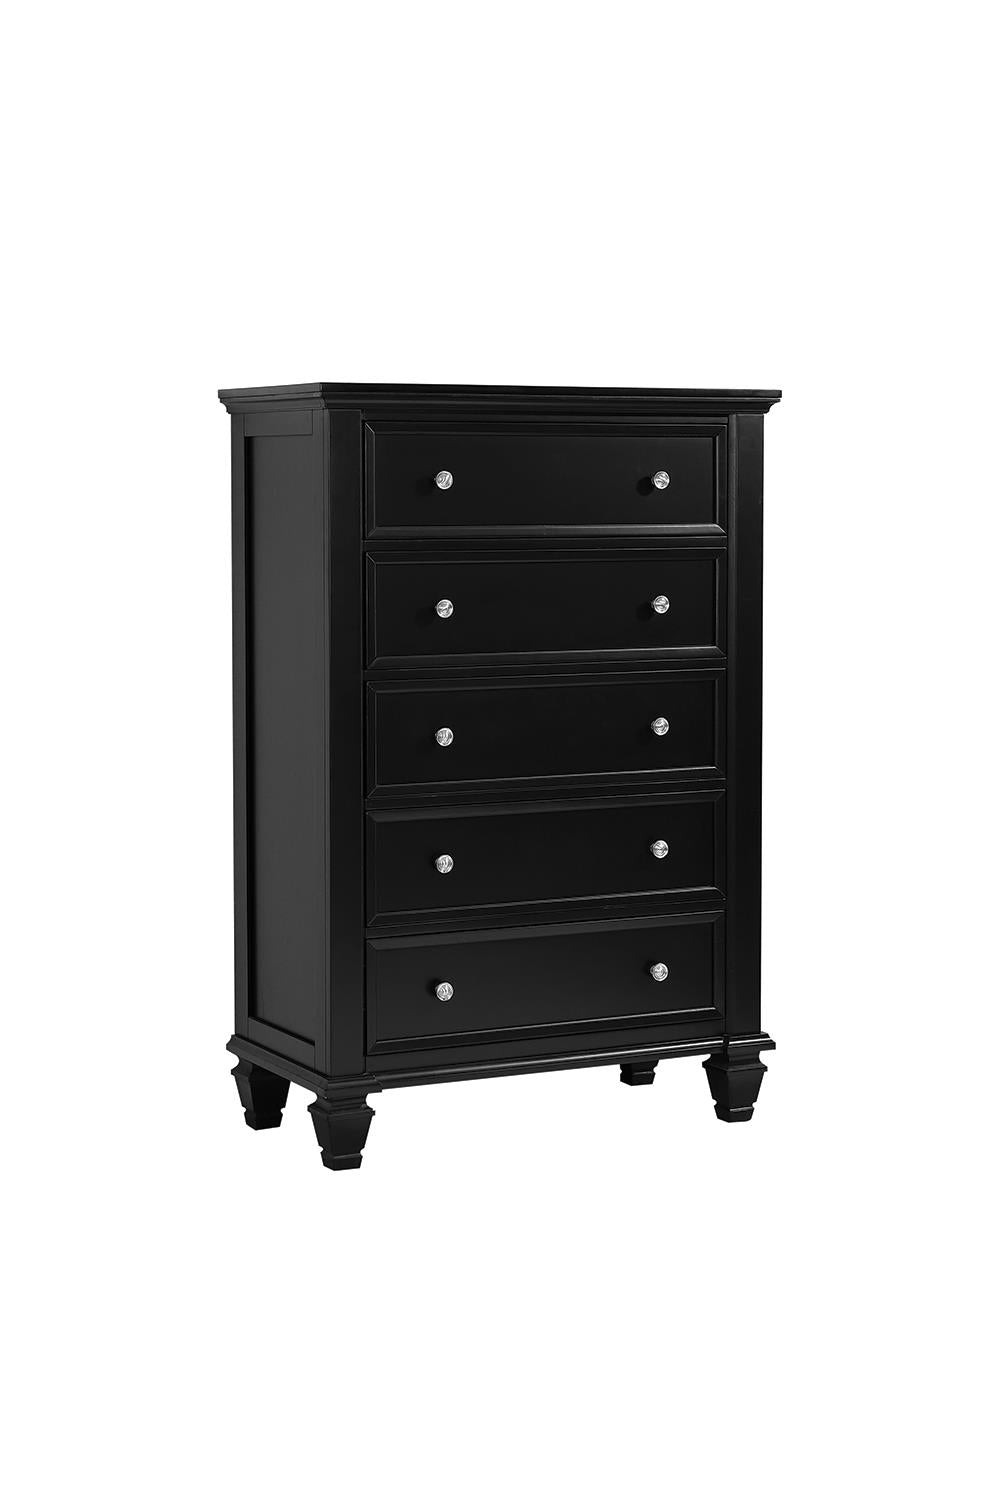 Sandy Beach 5-drawer Chest Black Sandy Beach 5-drawer Chest Black Half Price Furniture